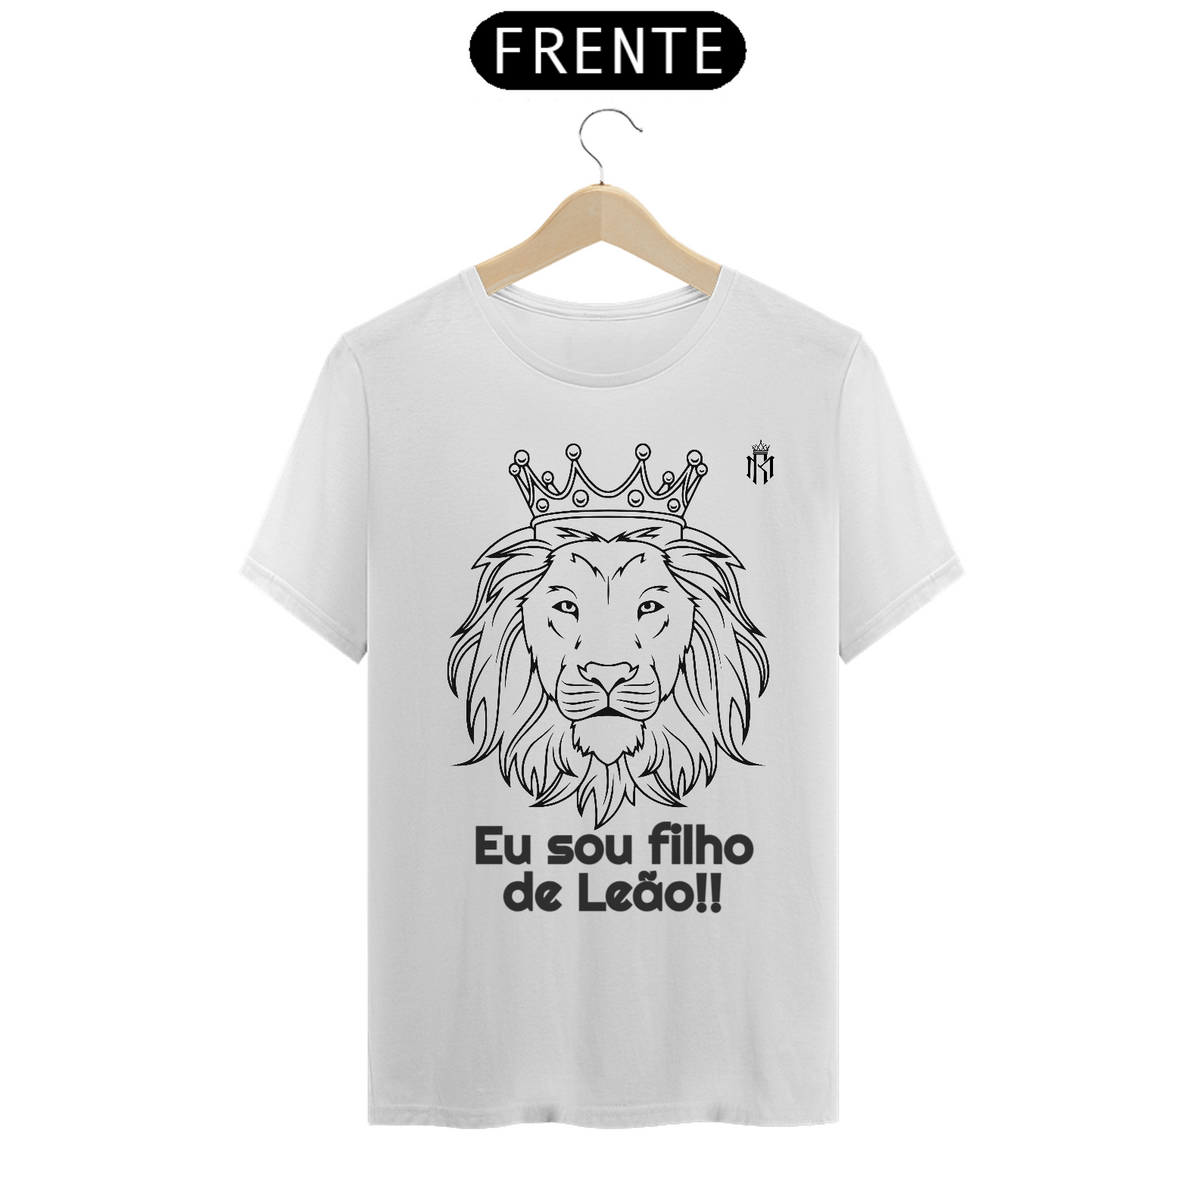 Nome do produto: Camisa sou filho de Leão